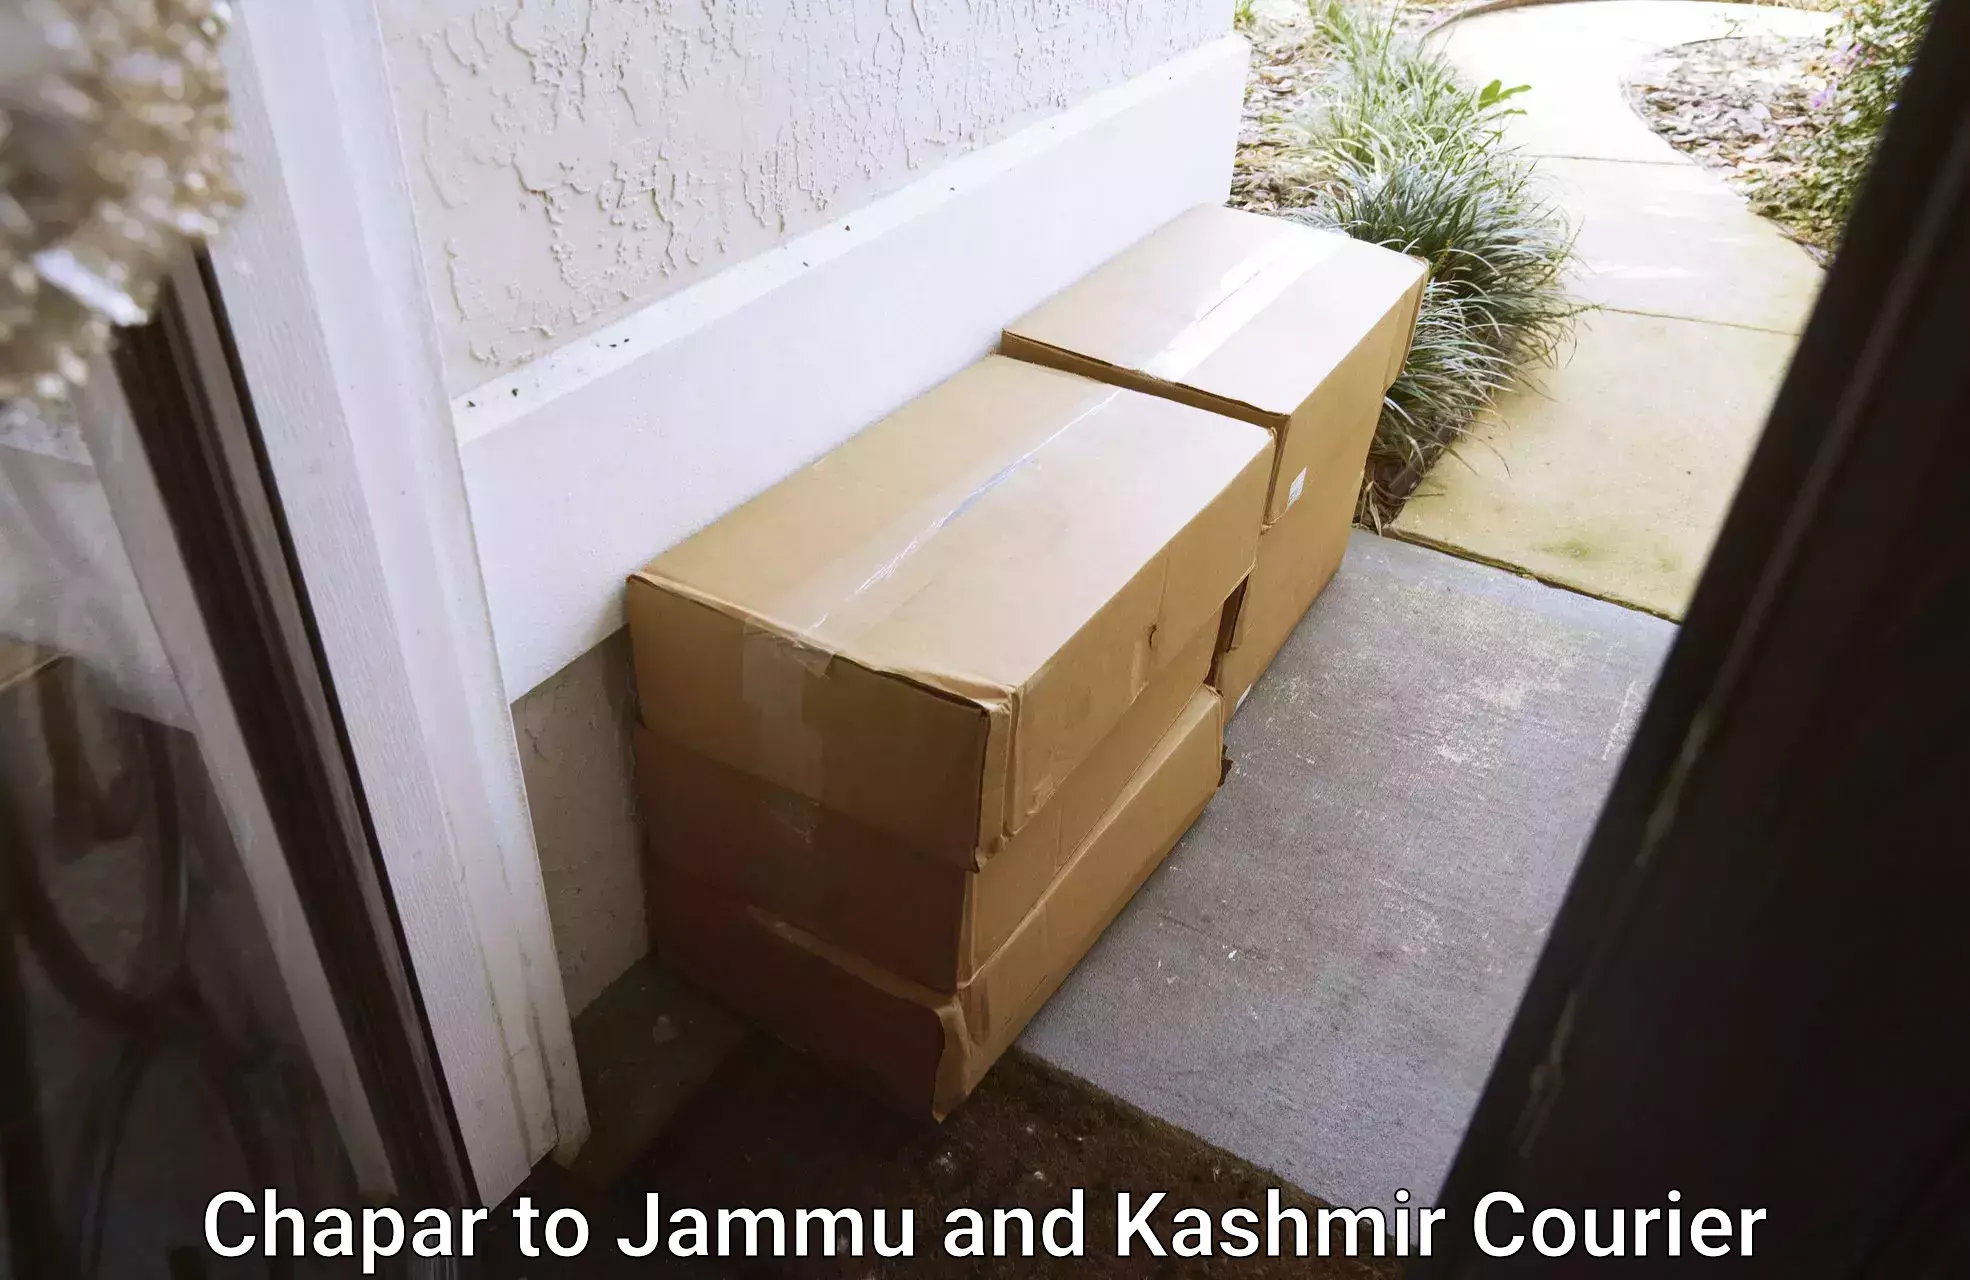 Efficient parcel service Chapar to Jakh